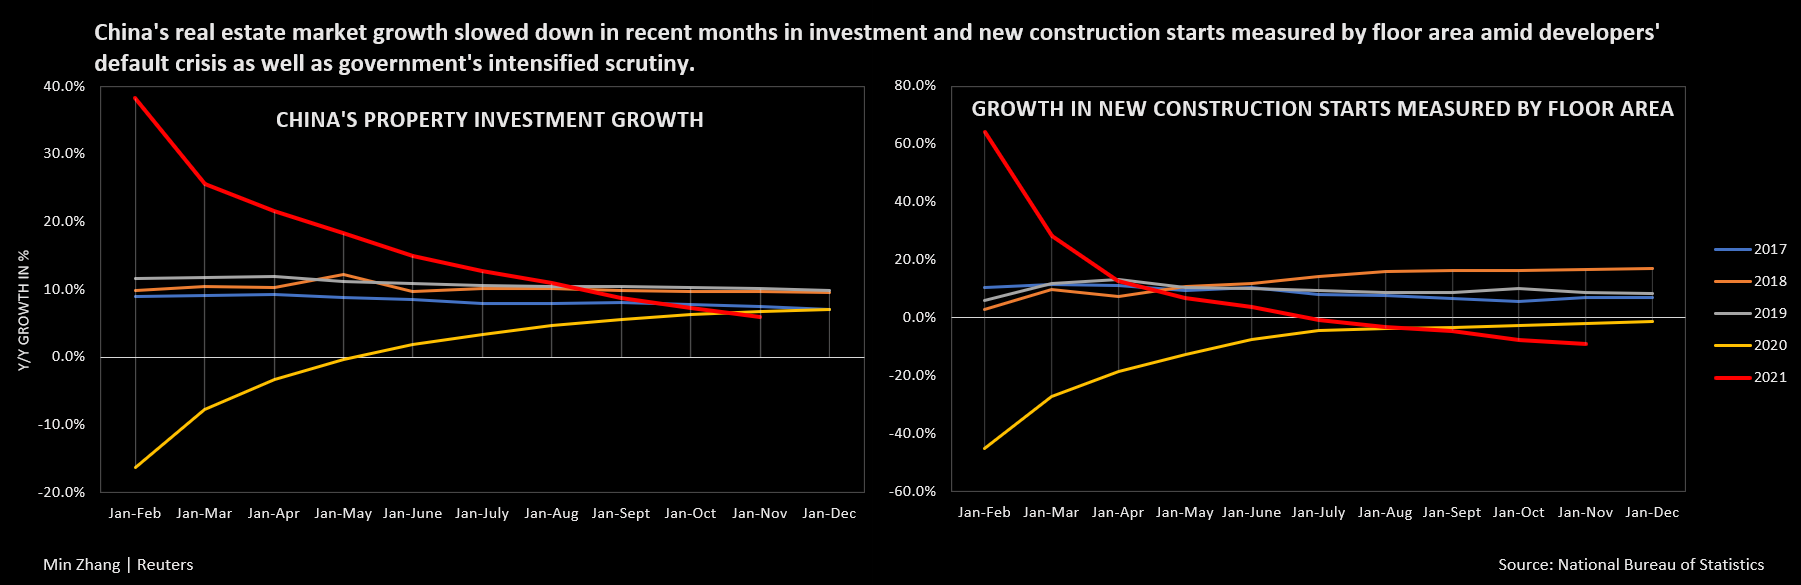 La croissance des investissements immobiliers en Chine et des nouvelles constructions mesurées par surface au sol a chuté ces derniers mois en raison de la crise par défaut des développeurs et des contrôles gouvernementaux.